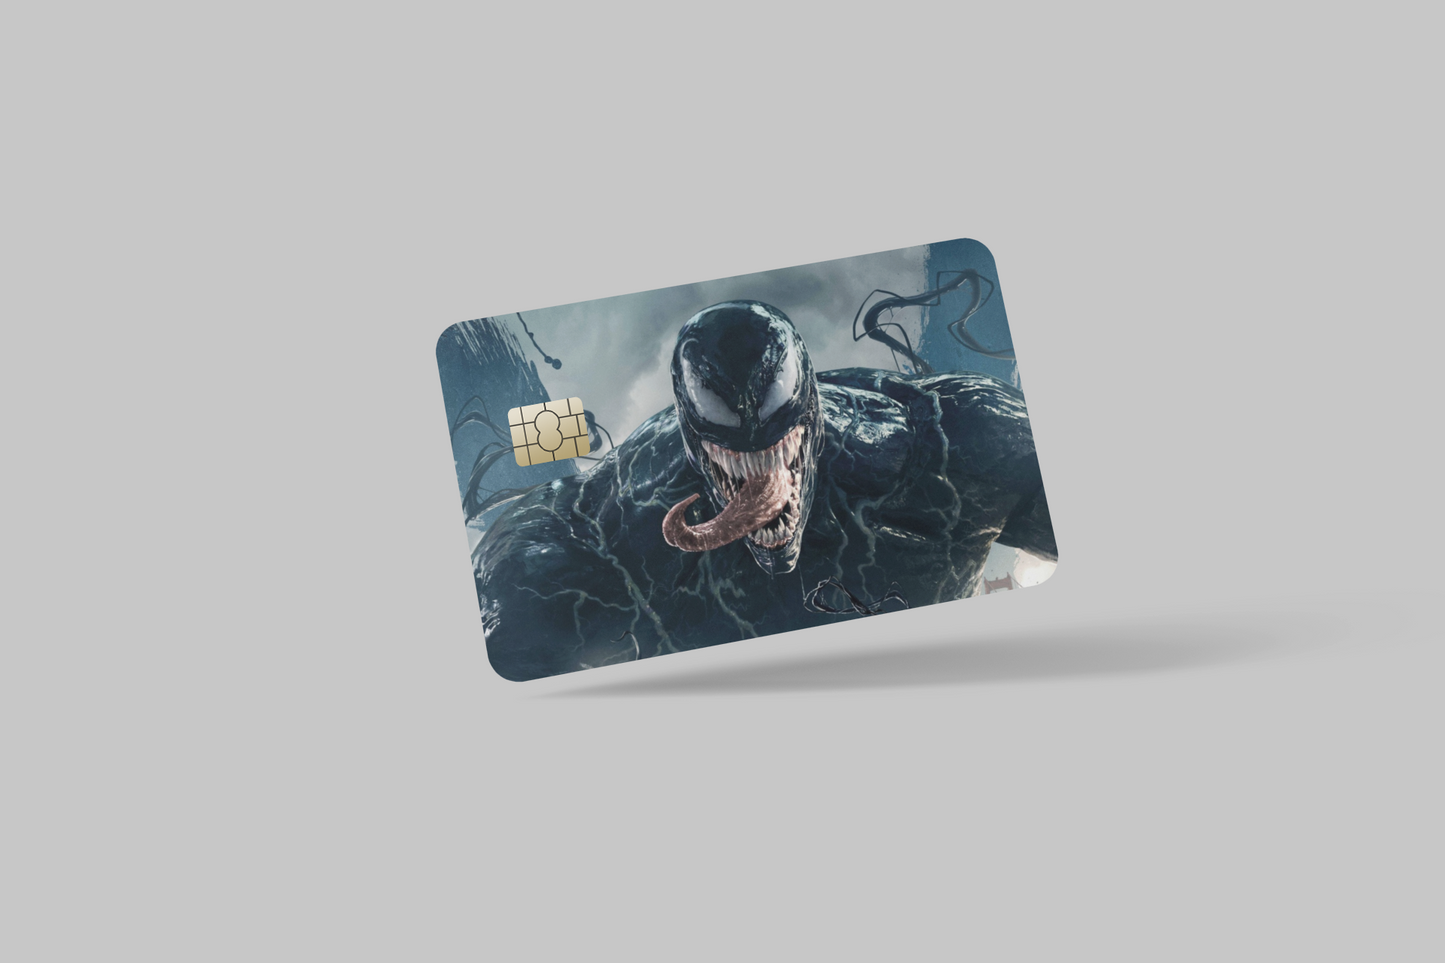 VENOM 2 PC, credit card skin & DEBIT CARD